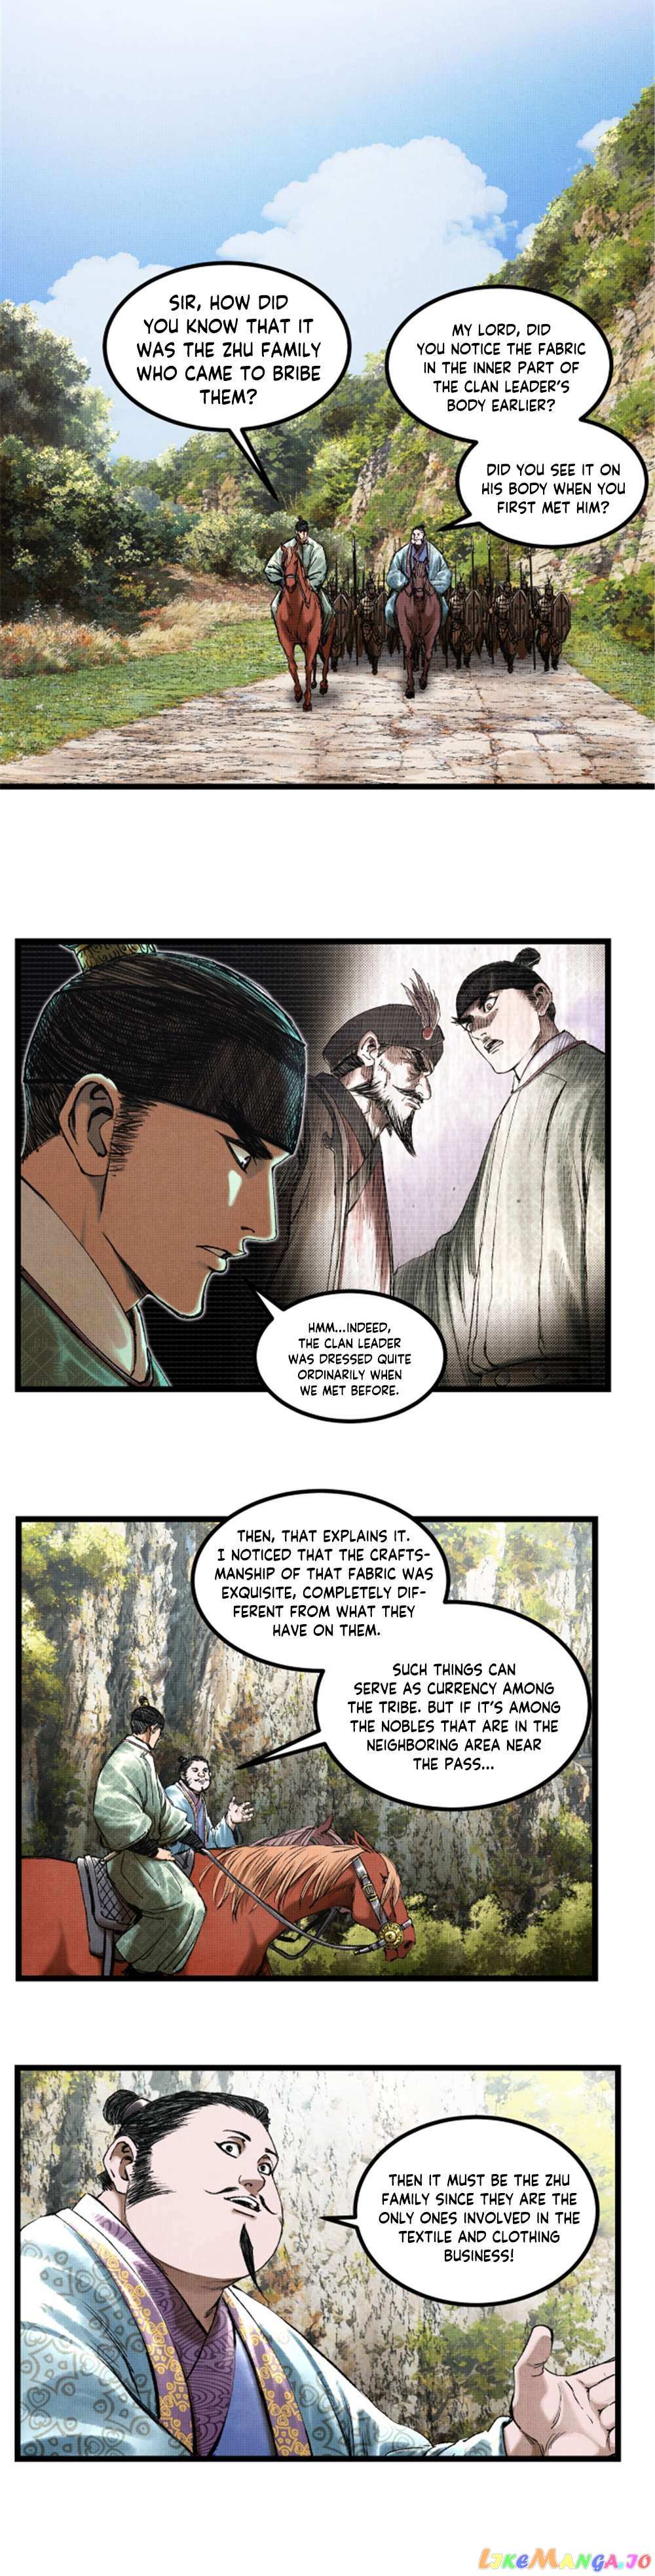 Lu Bu’S Life Story - Page 4